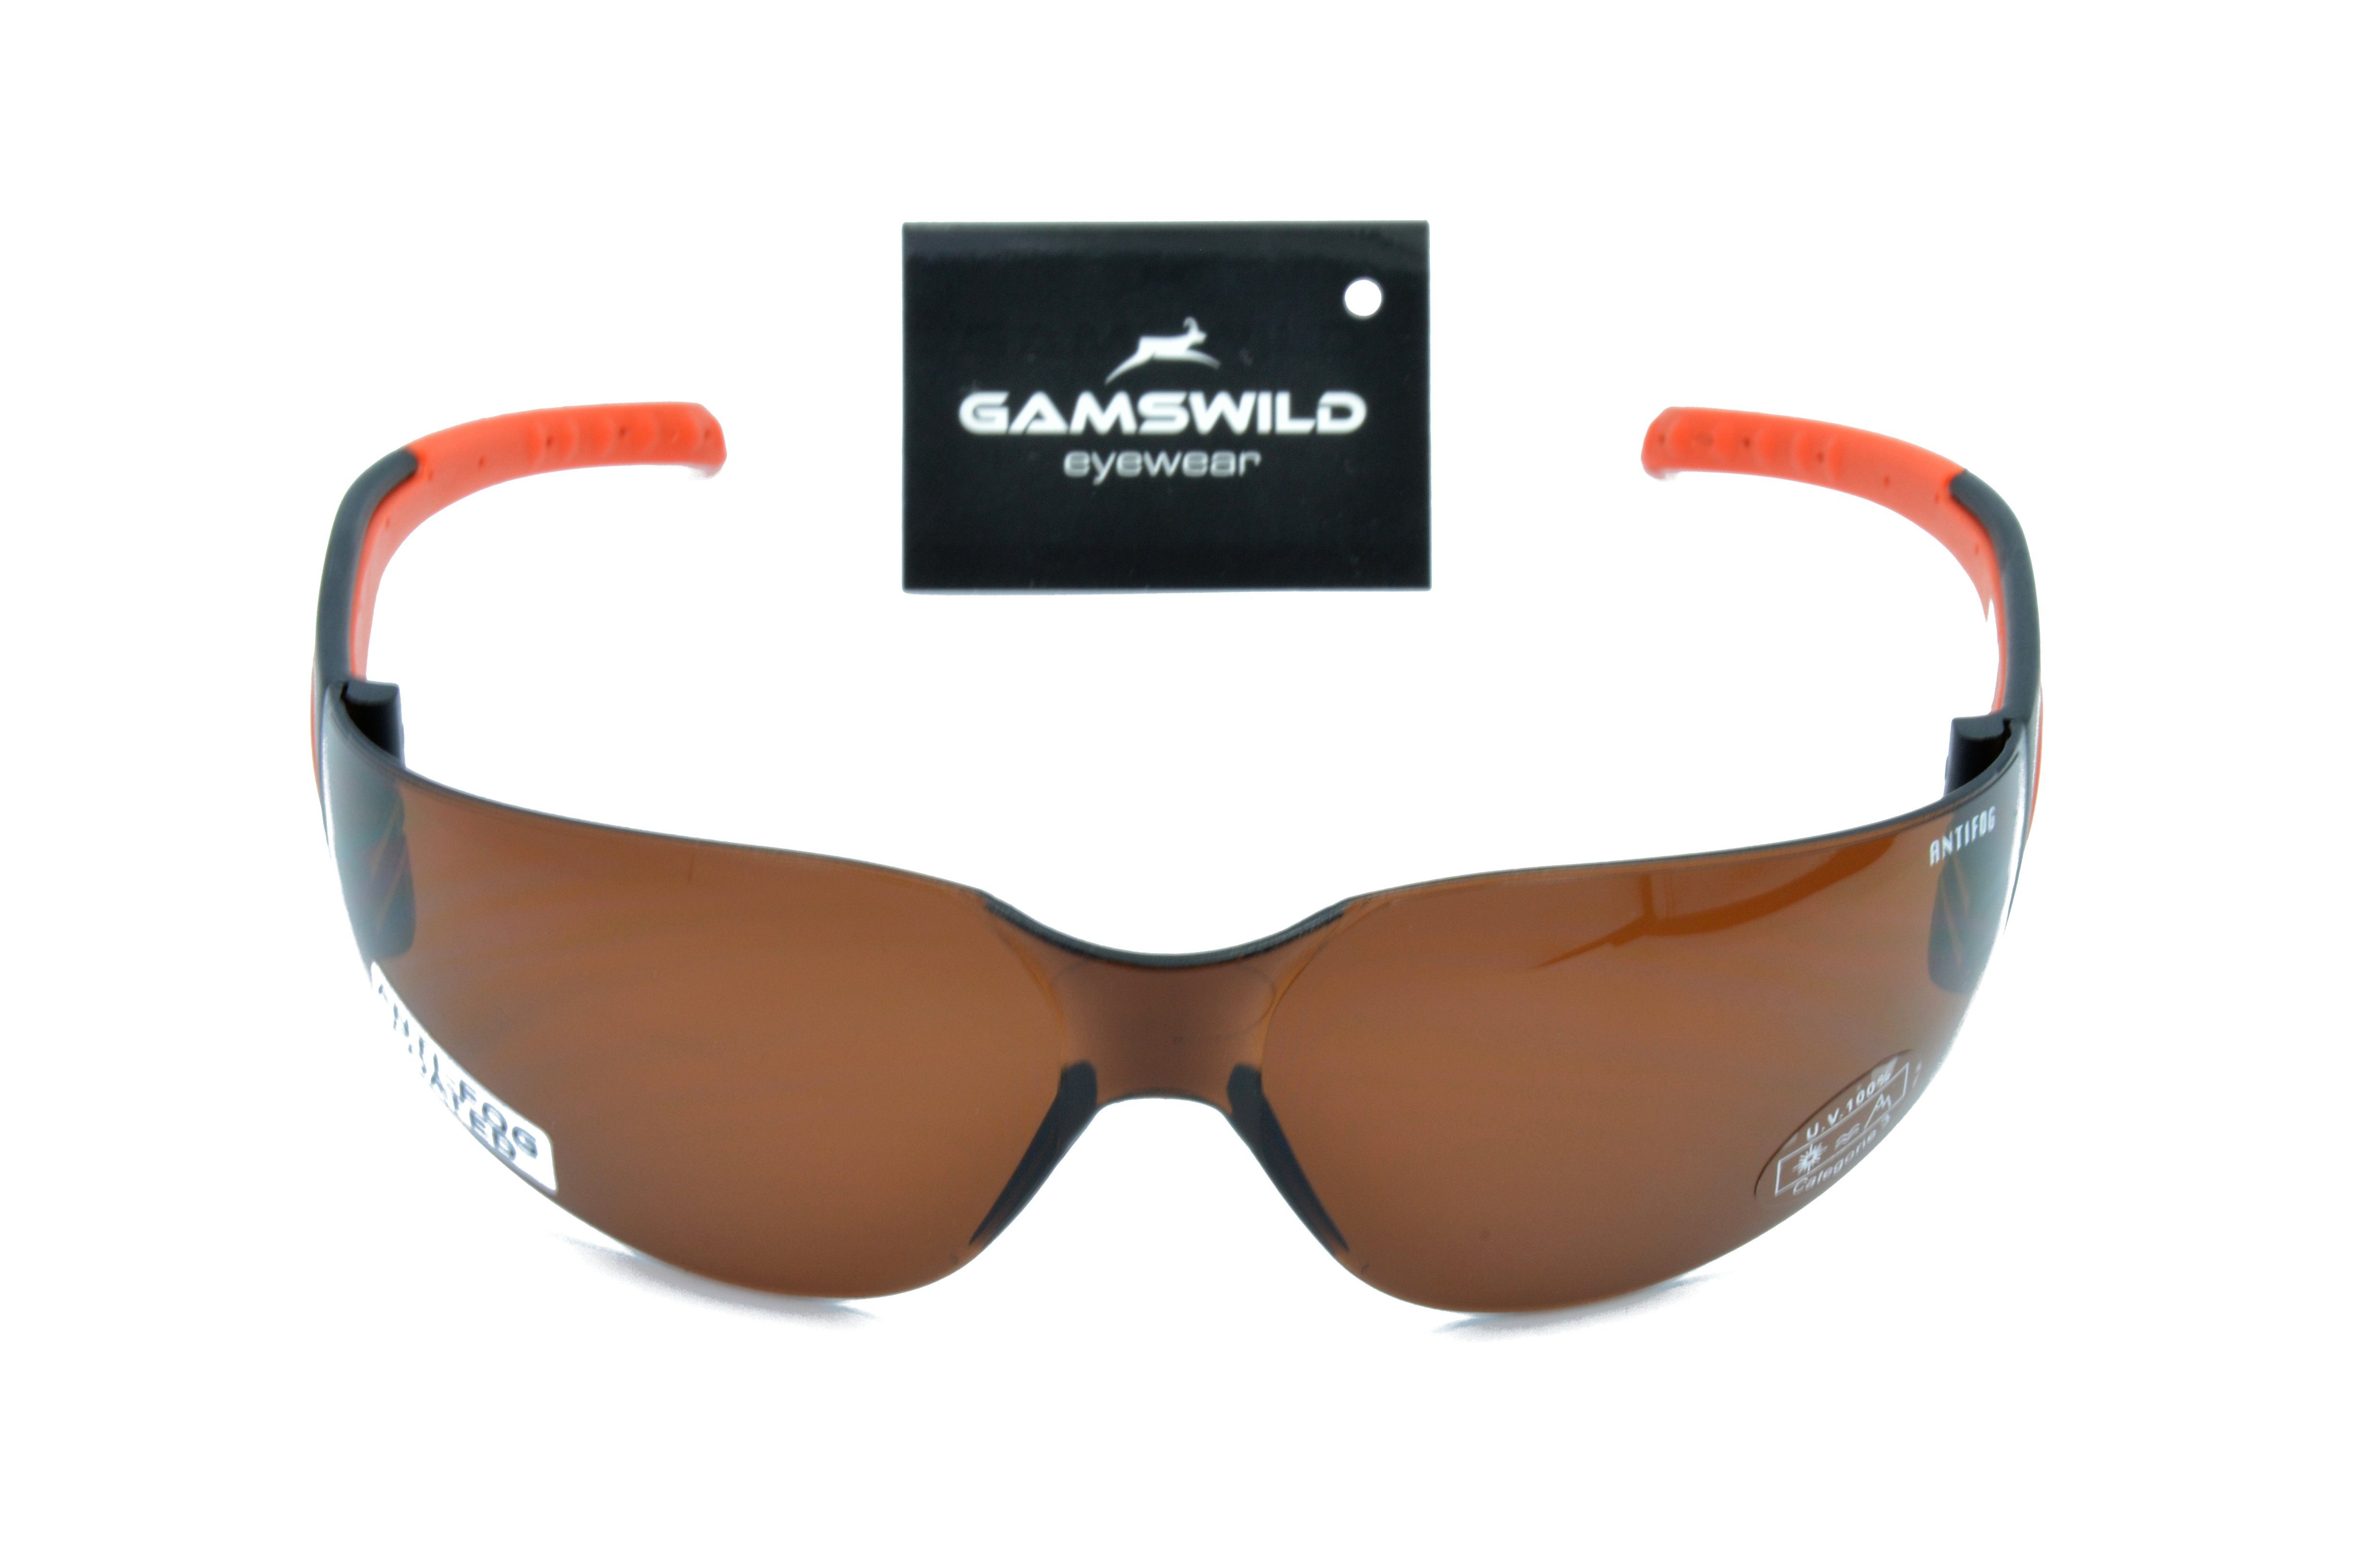 Sportbrille brau, Fahrradbrille Sonnenbrille braun Herren ANTIFOG Damen Gamswild Unisex, WS7122 grau, orange, Skibrille